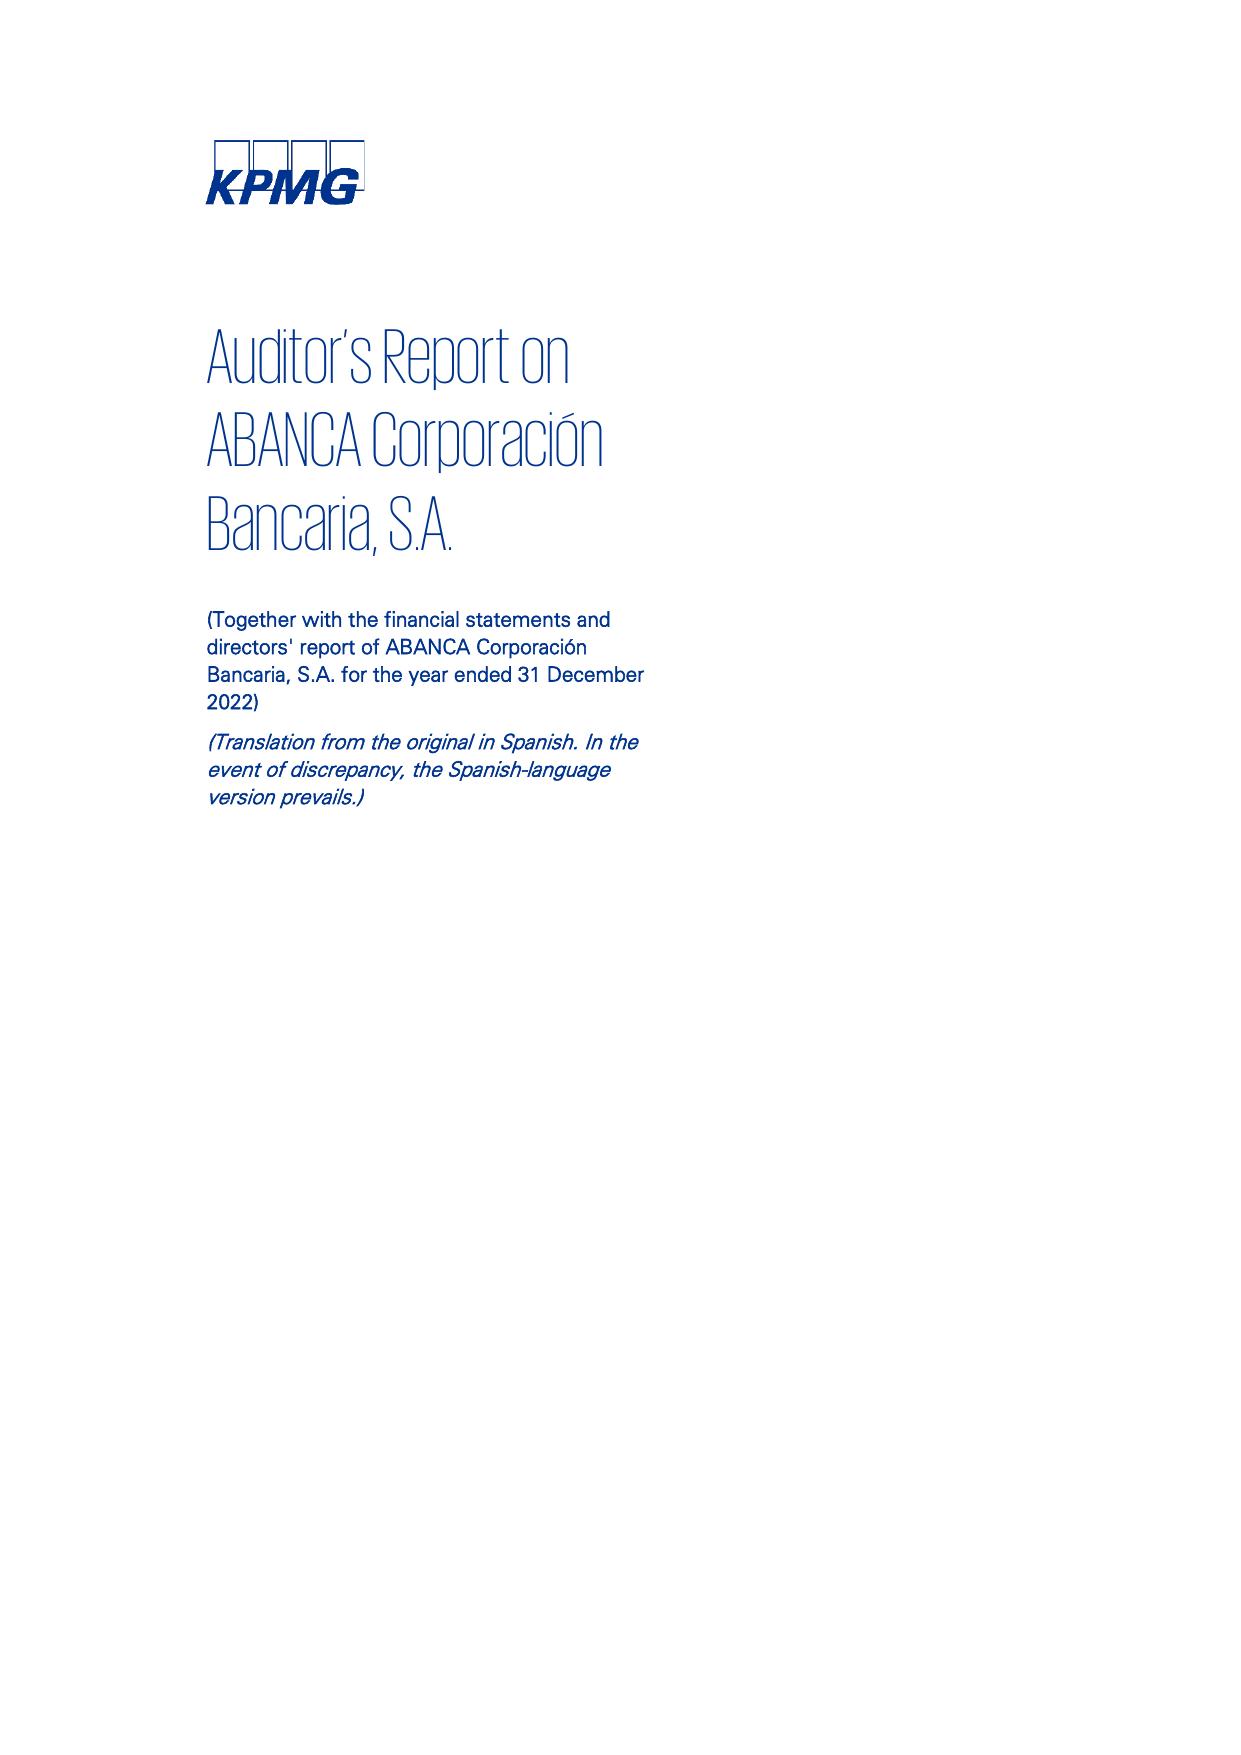 ABANCACORPORACIONBANCARIA 2022 Annual Report